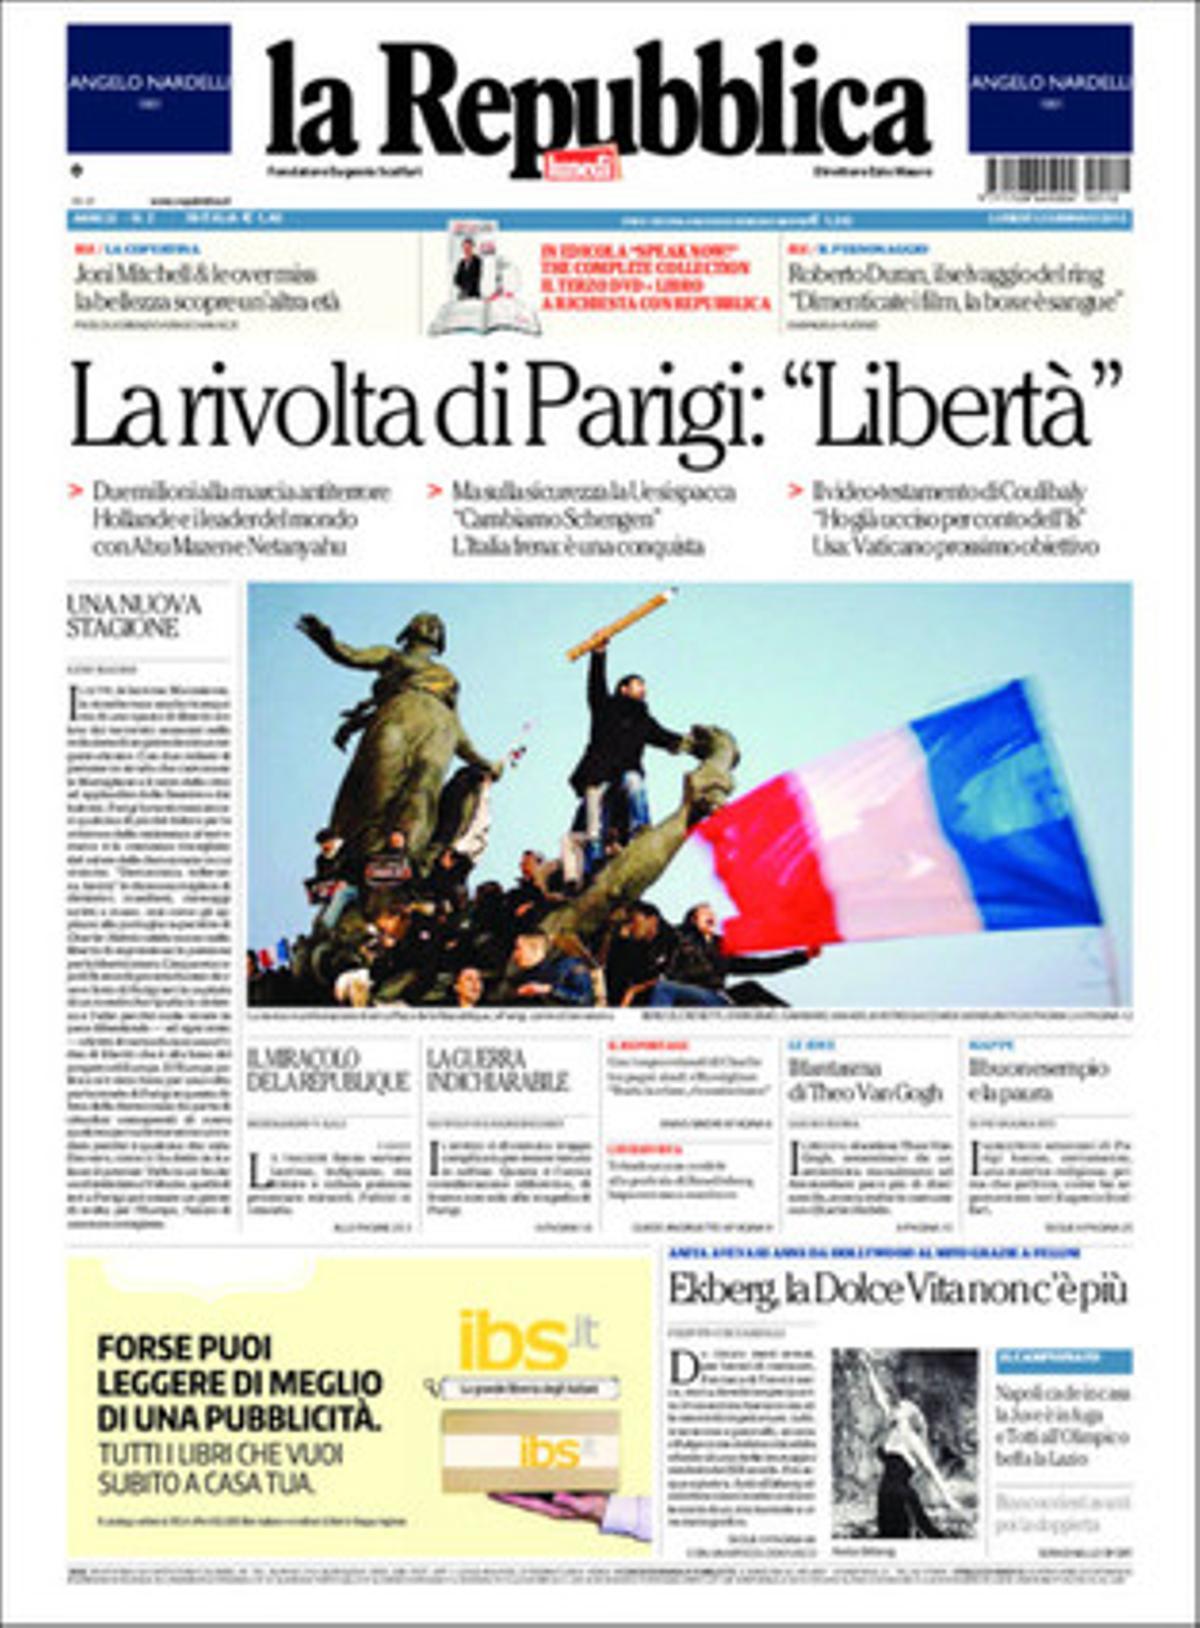 ’La Repubblica’.